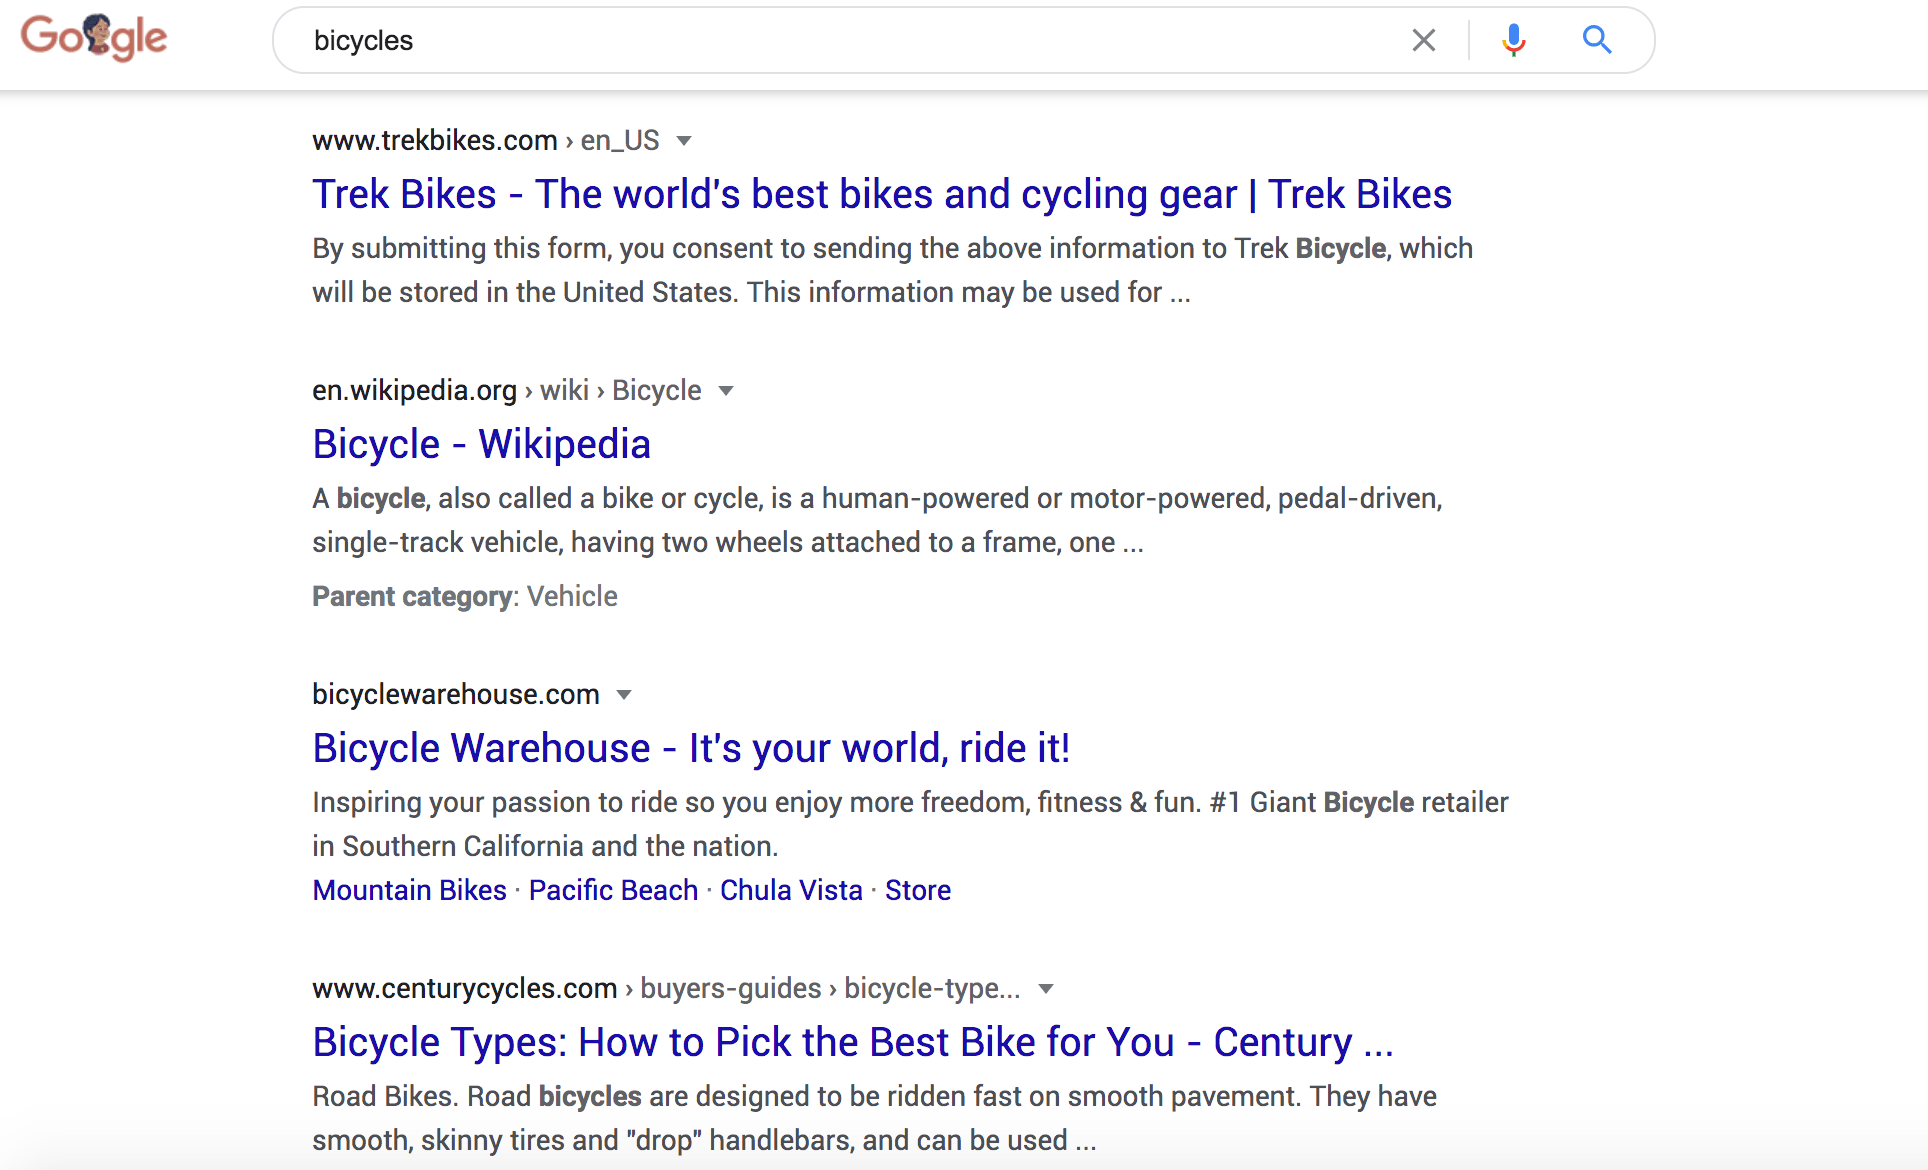 谷歌搜索关键词“自行车”的结果